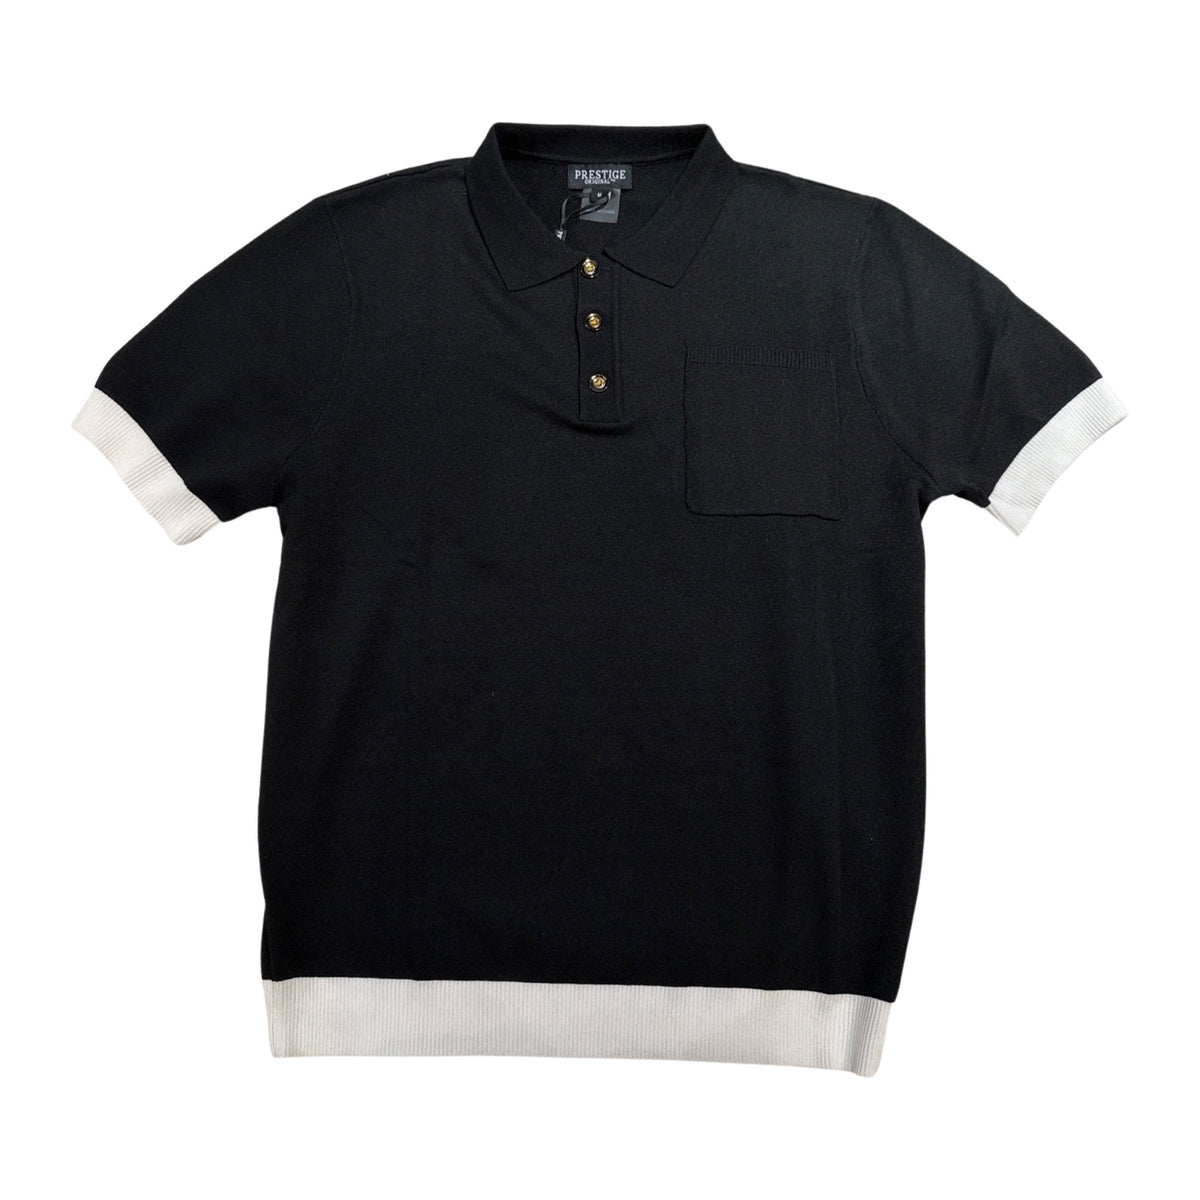 Prestige Classic Black Knit Button Polo Shirt - Dudes Boutique